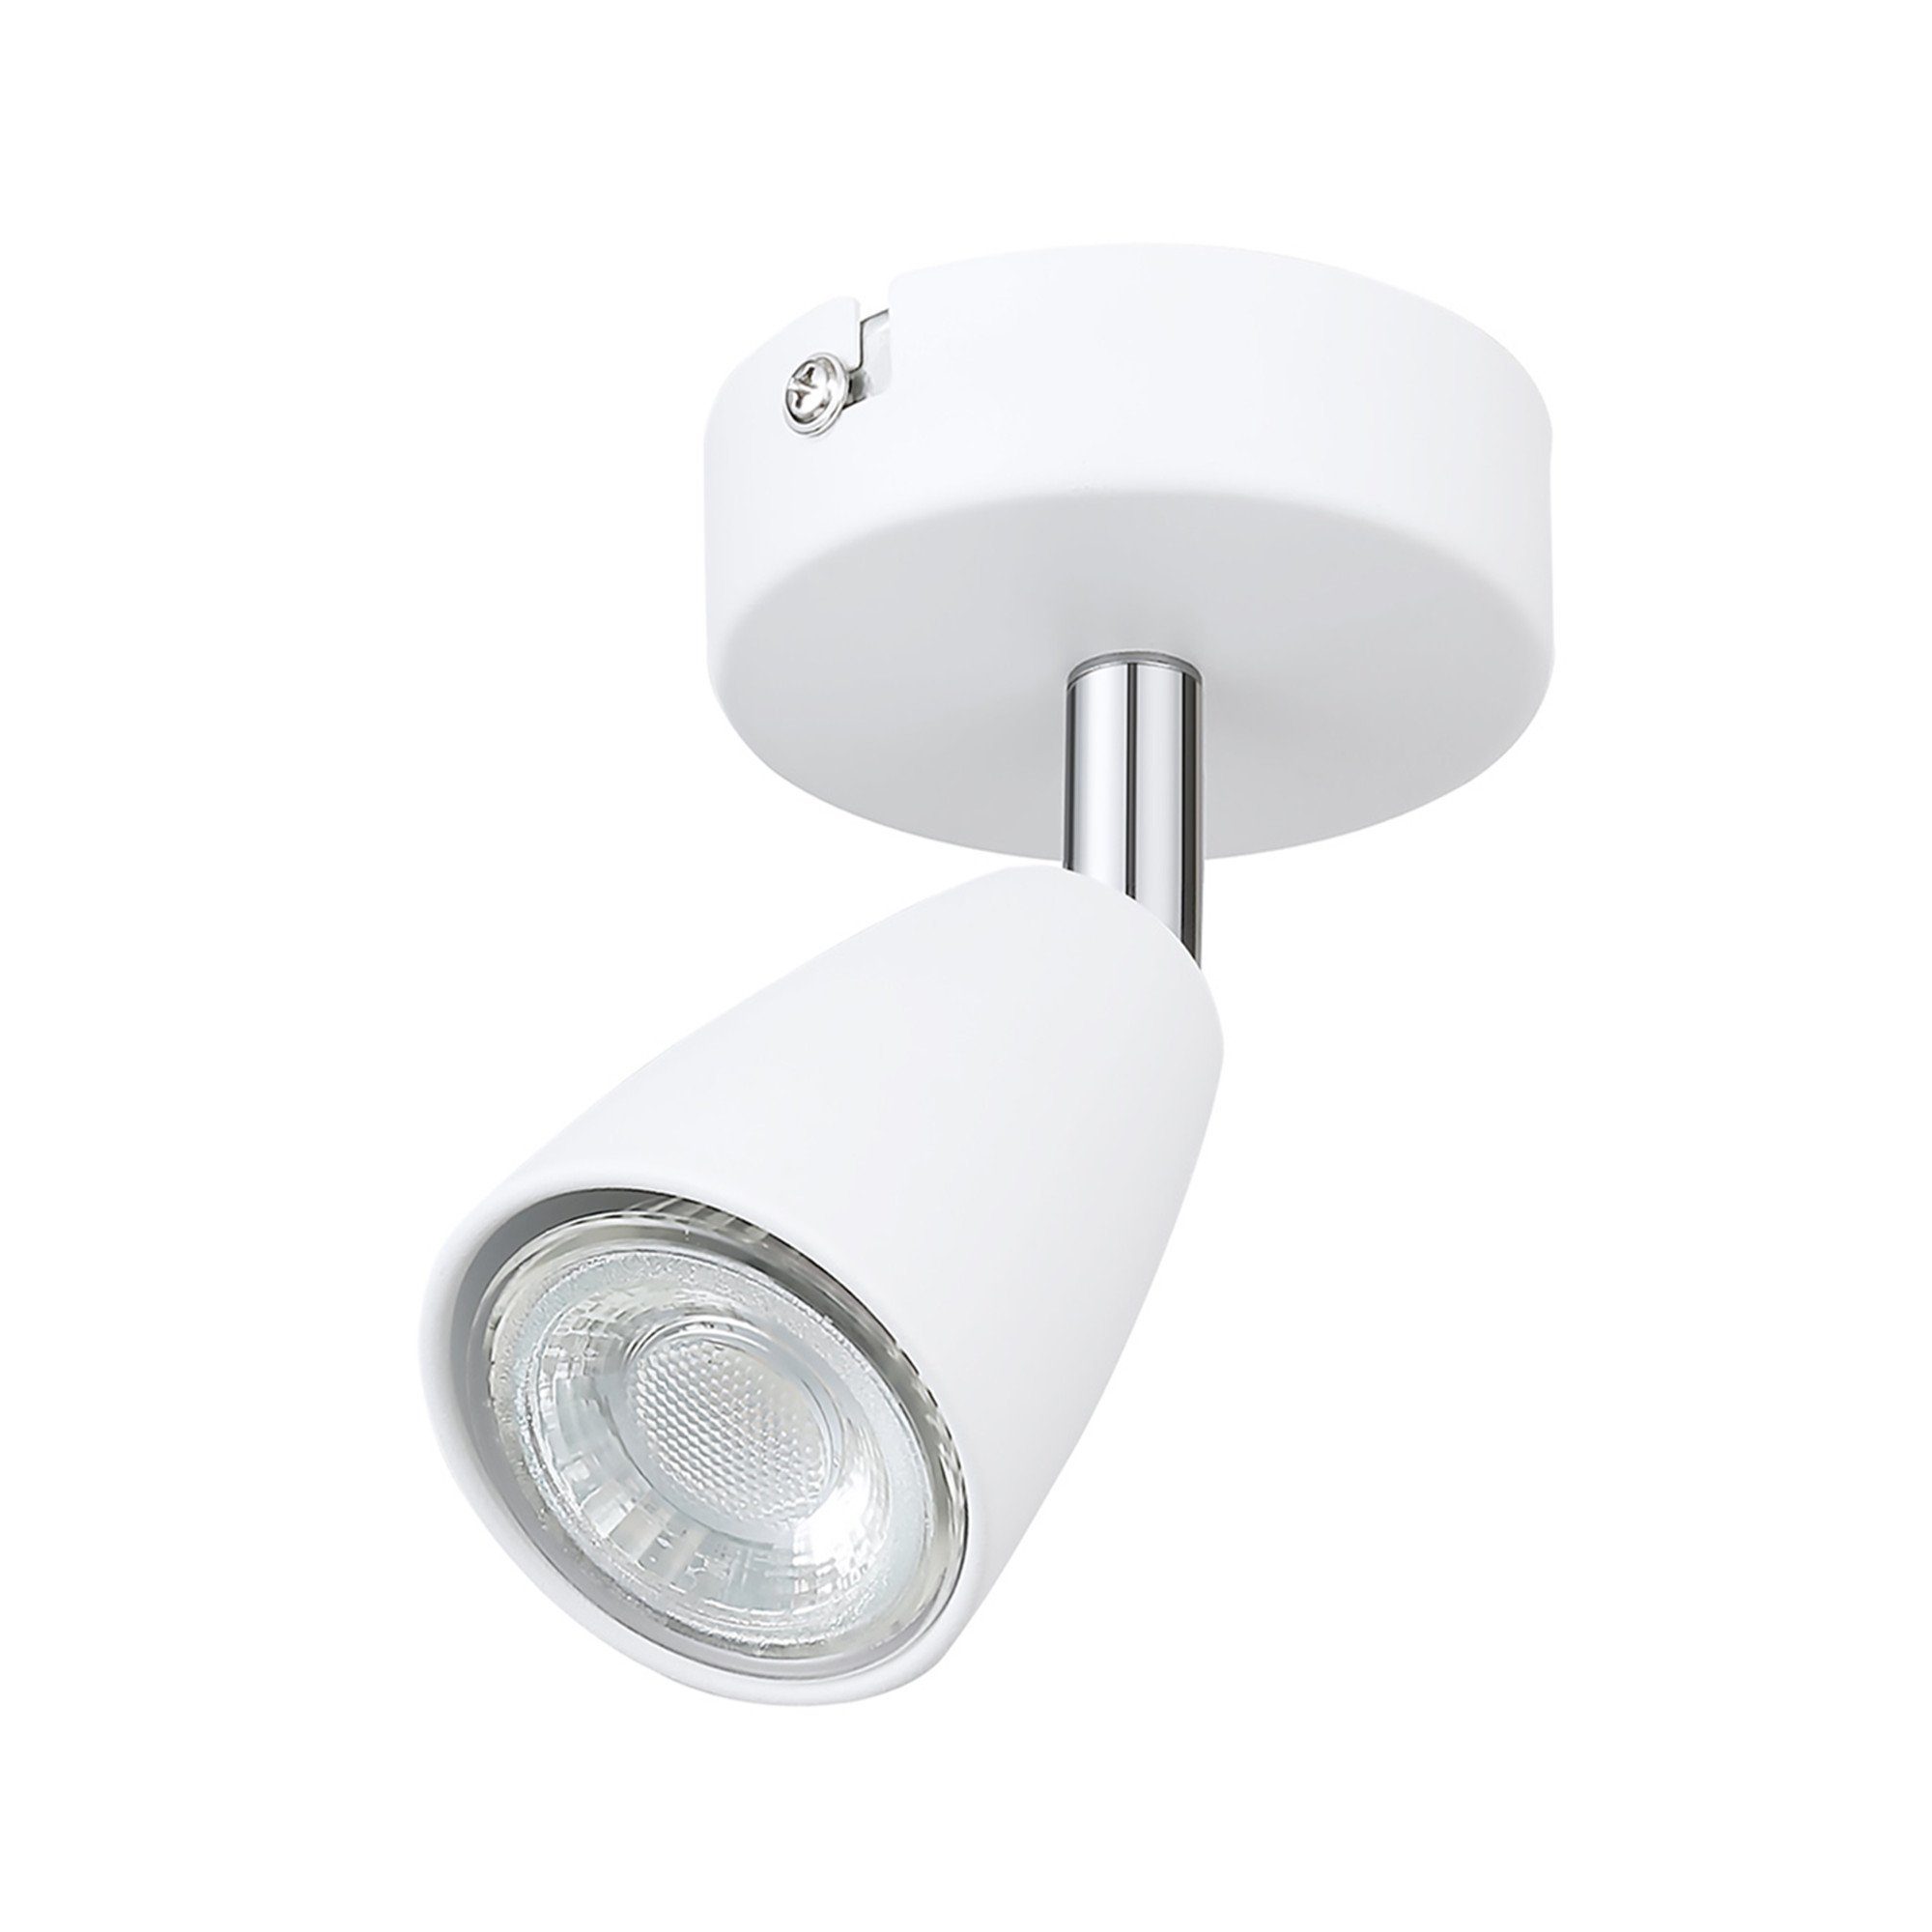 IMPTS Dimmbar, Warmweiß, 1 LED wechselbar, Nicht Deckenstrahler, Deckenspots, Spotleuchte, LED Wandlampe Flammig